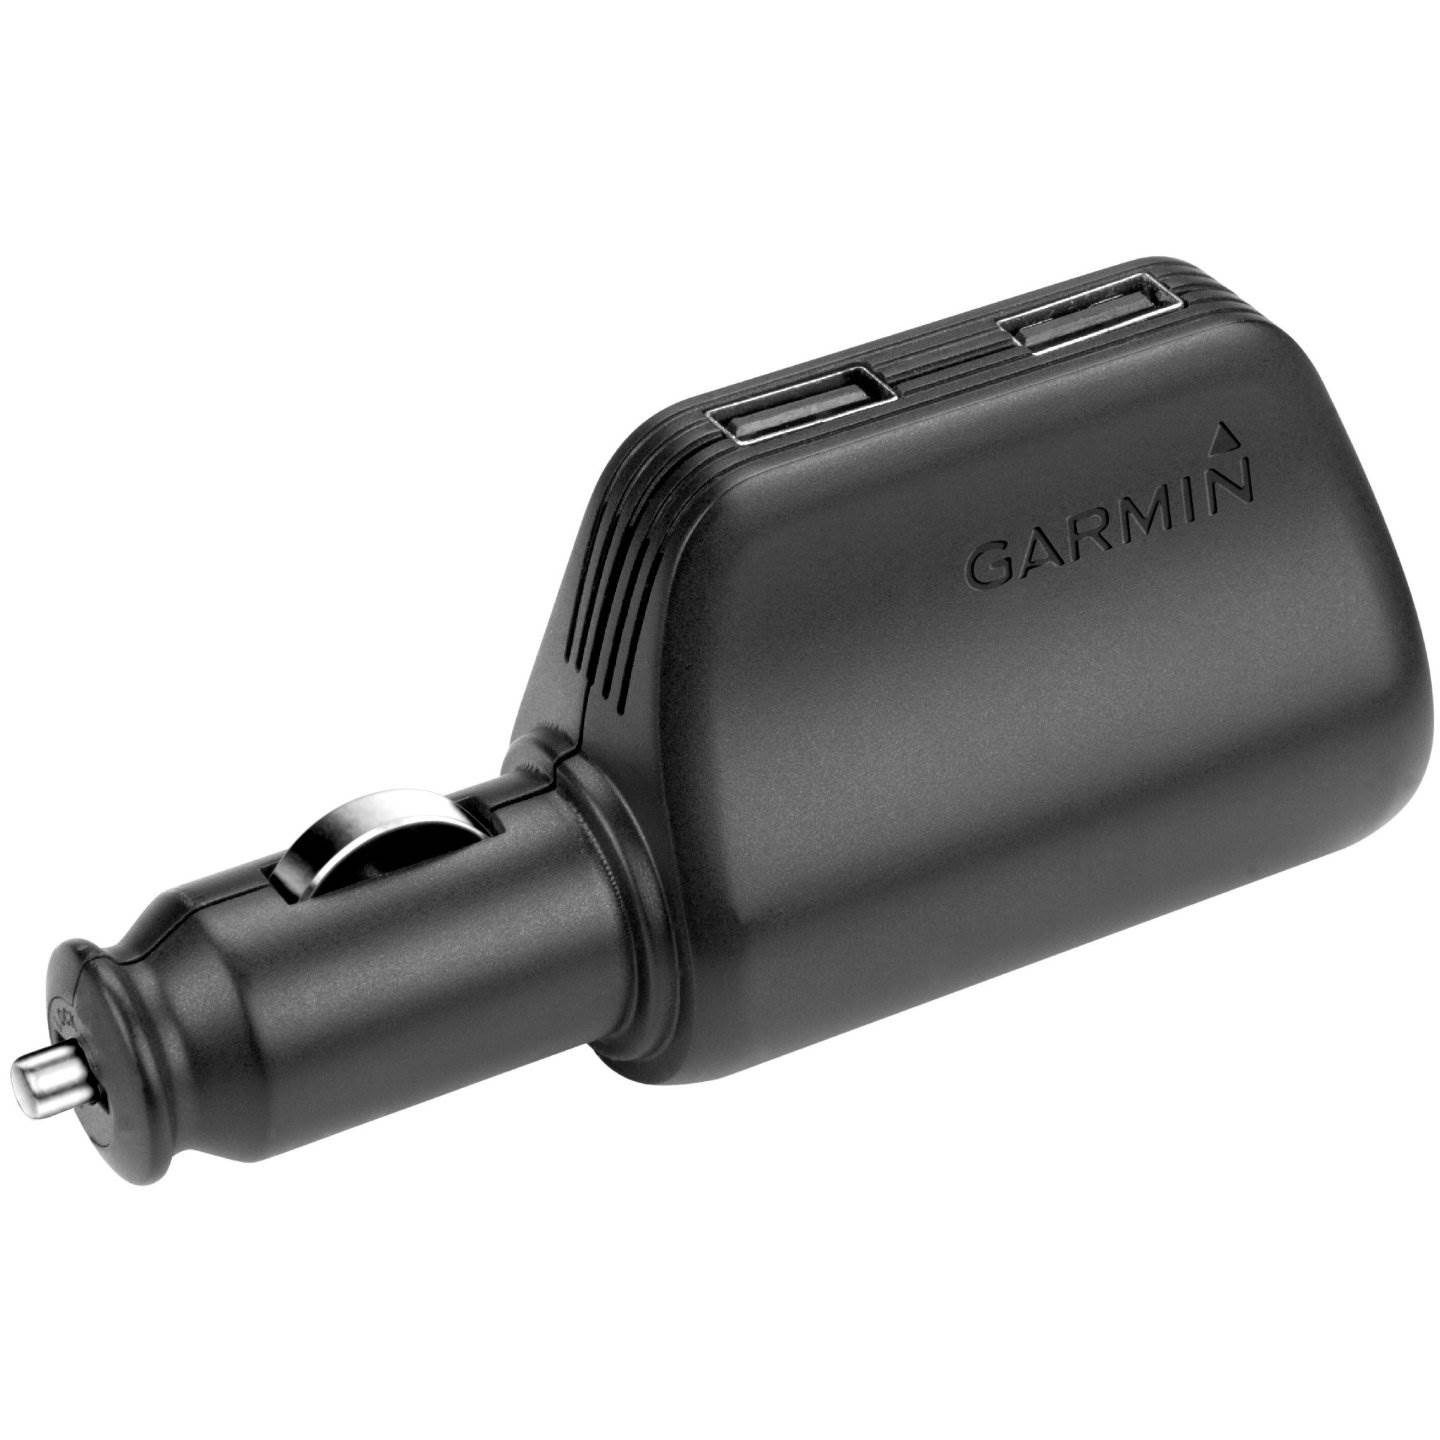  Incarcator auto Garmin GR-010-10723-17, Dual USB, 2.1A 